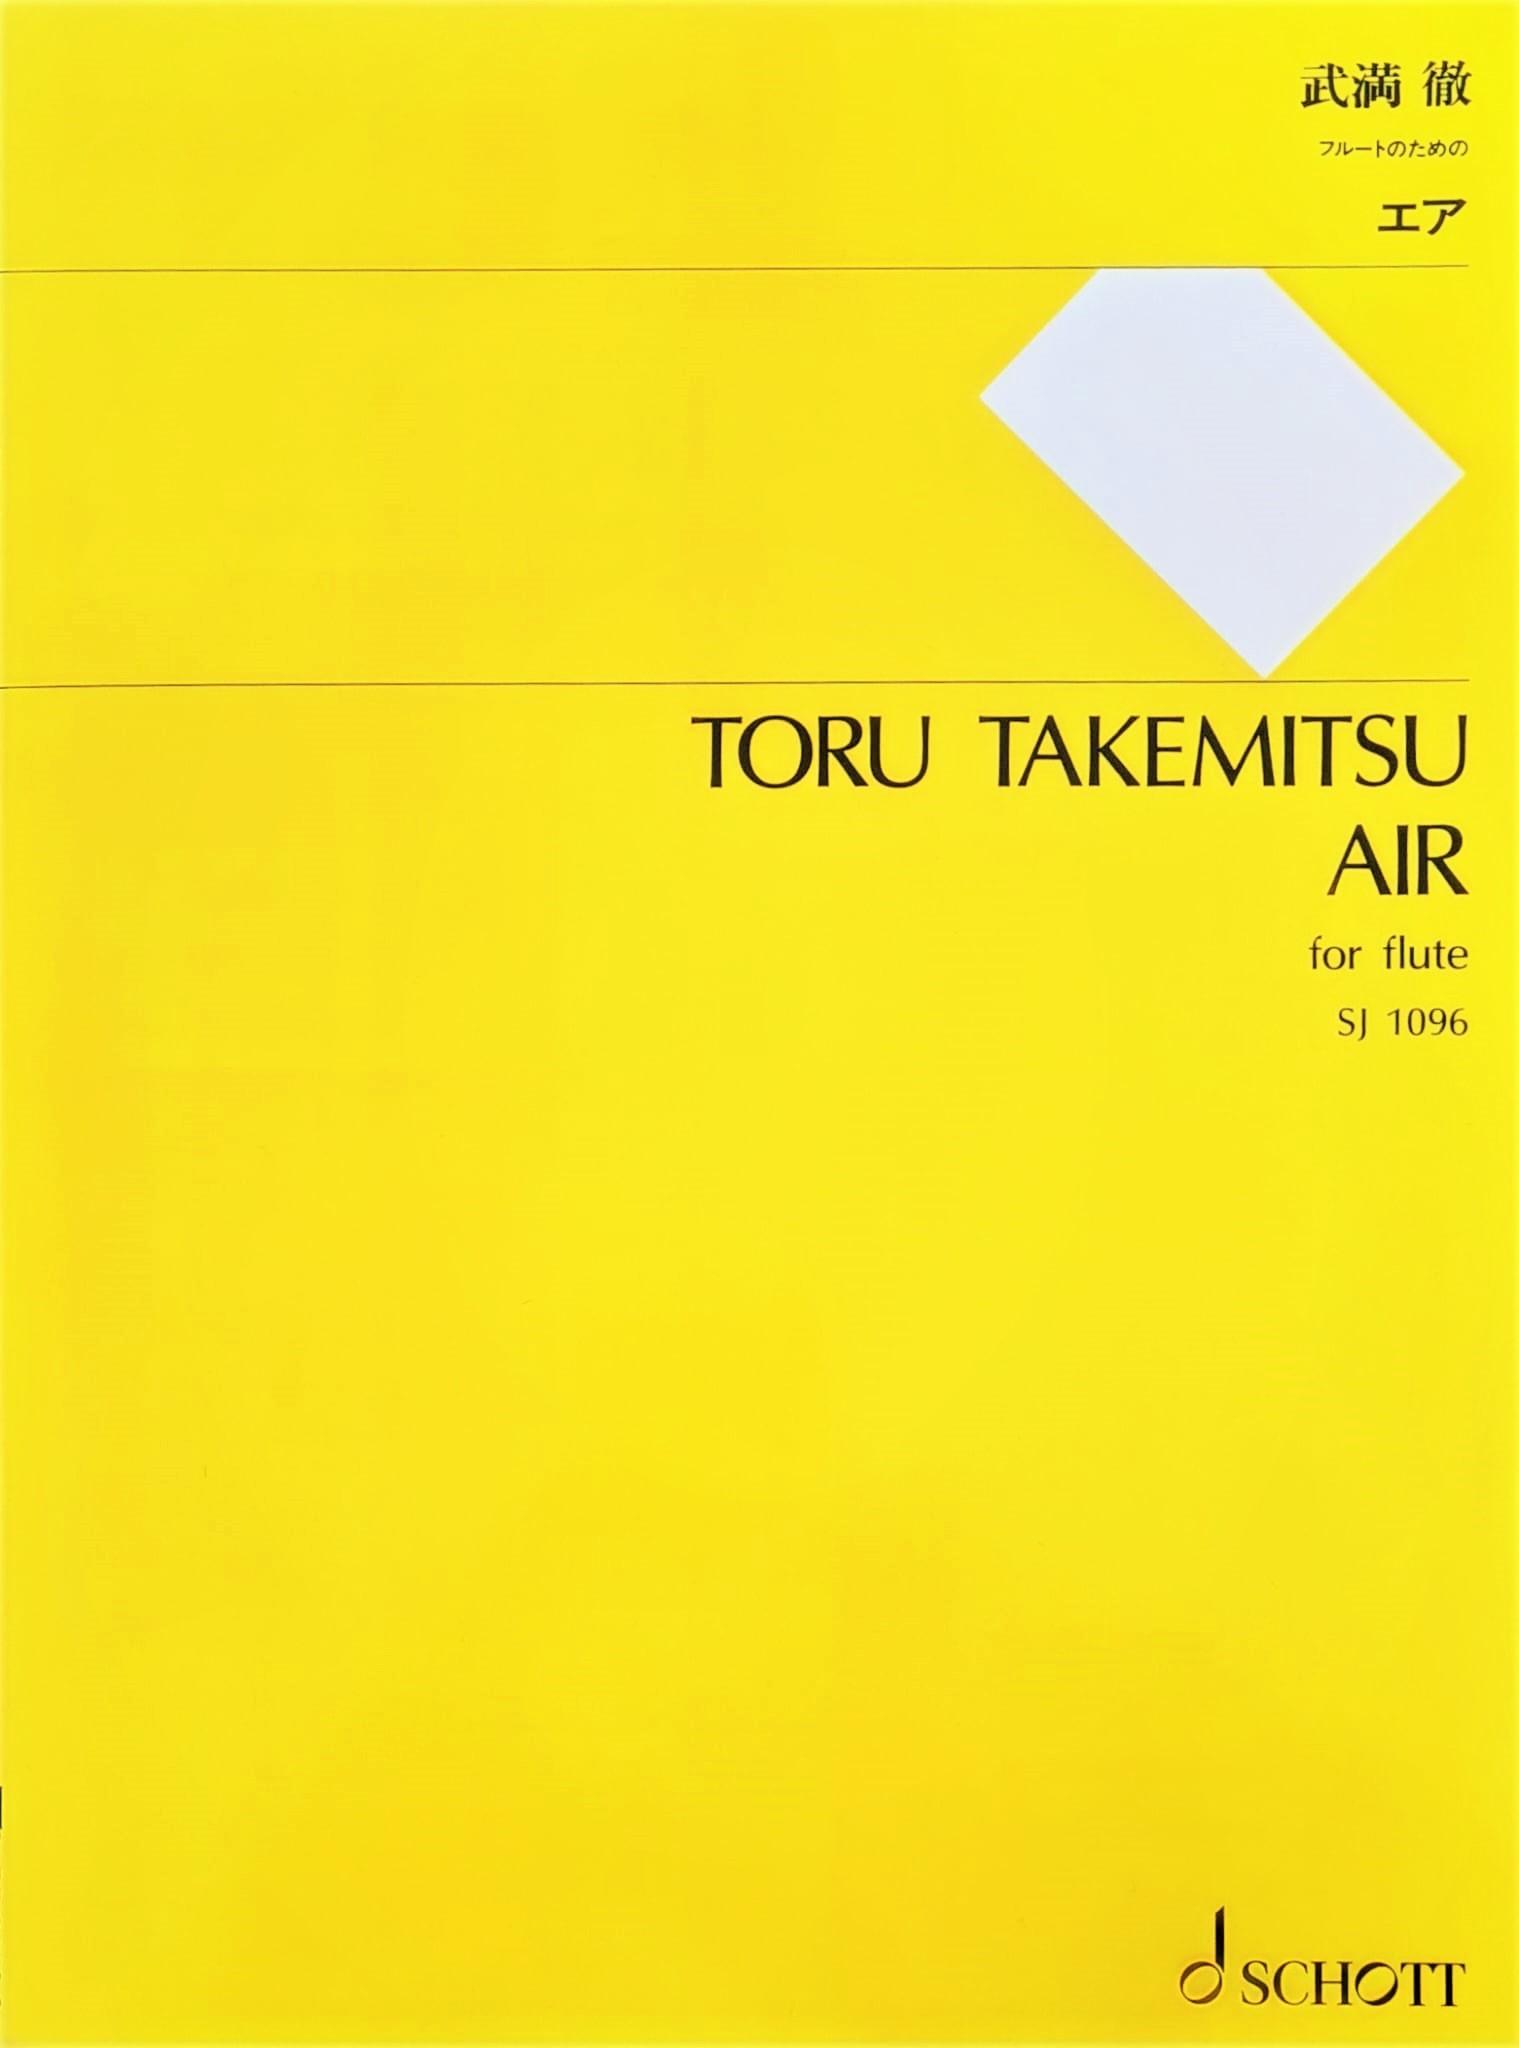 Air - Toru Takemitsu | Suono Flauti